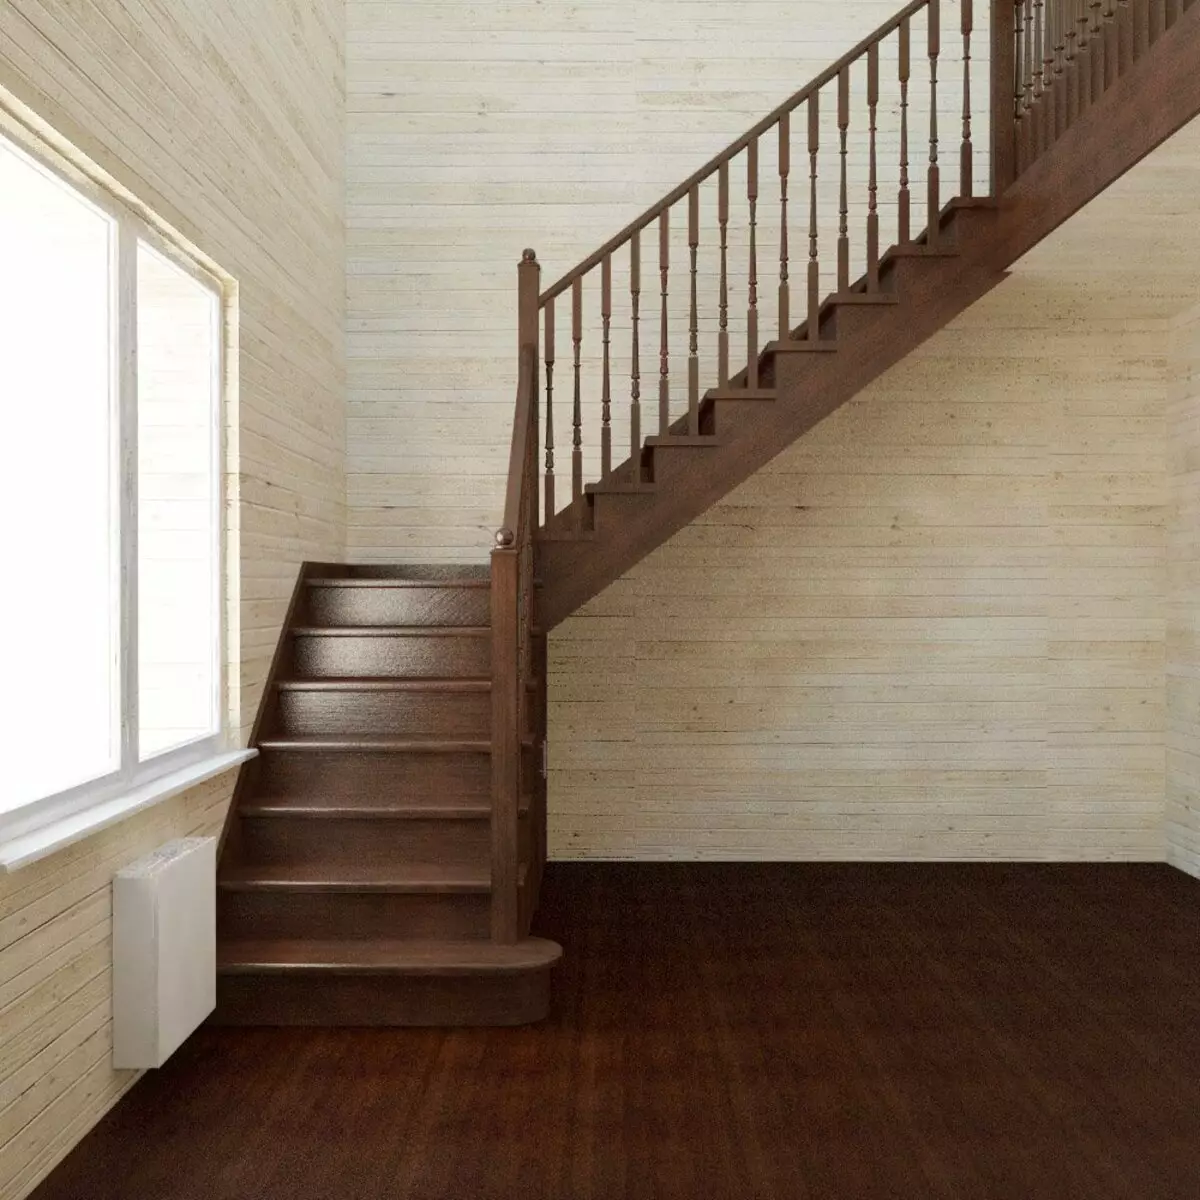 Куплю готовую лестницу недорогой. Лестница п образная 1640 на 910. Лестница межэтажная двухмаршевая. Г образные лестницы. Г образная лестница.